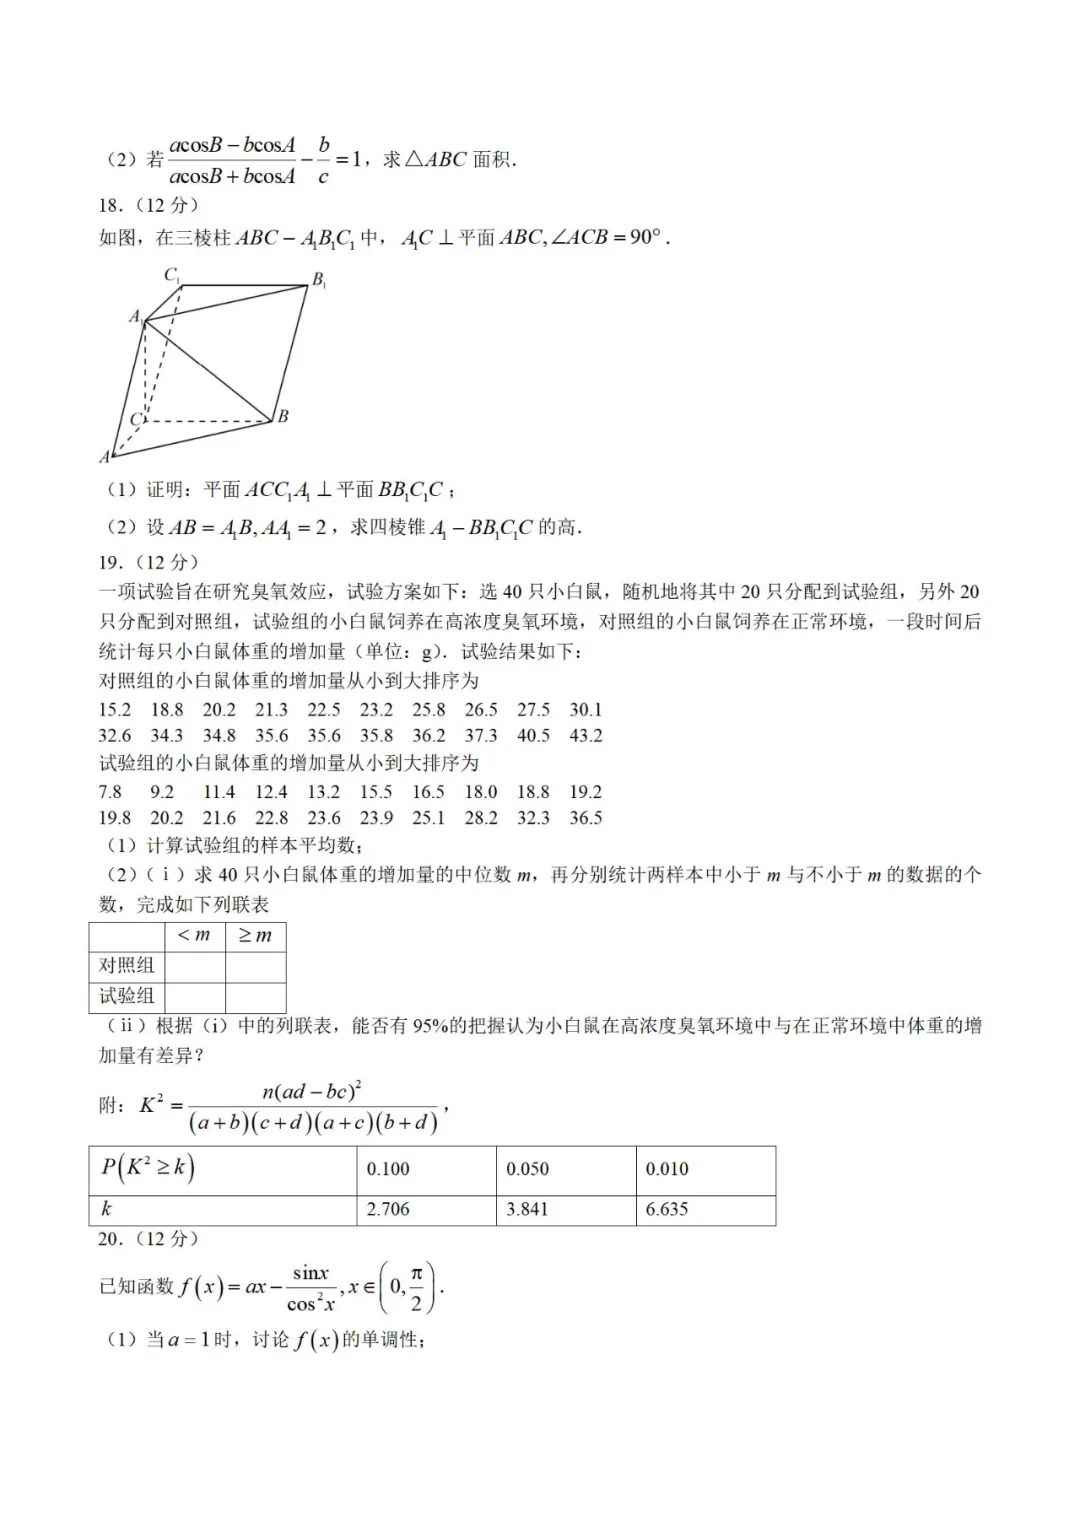 2023文科高考数学真题含答案(广西)